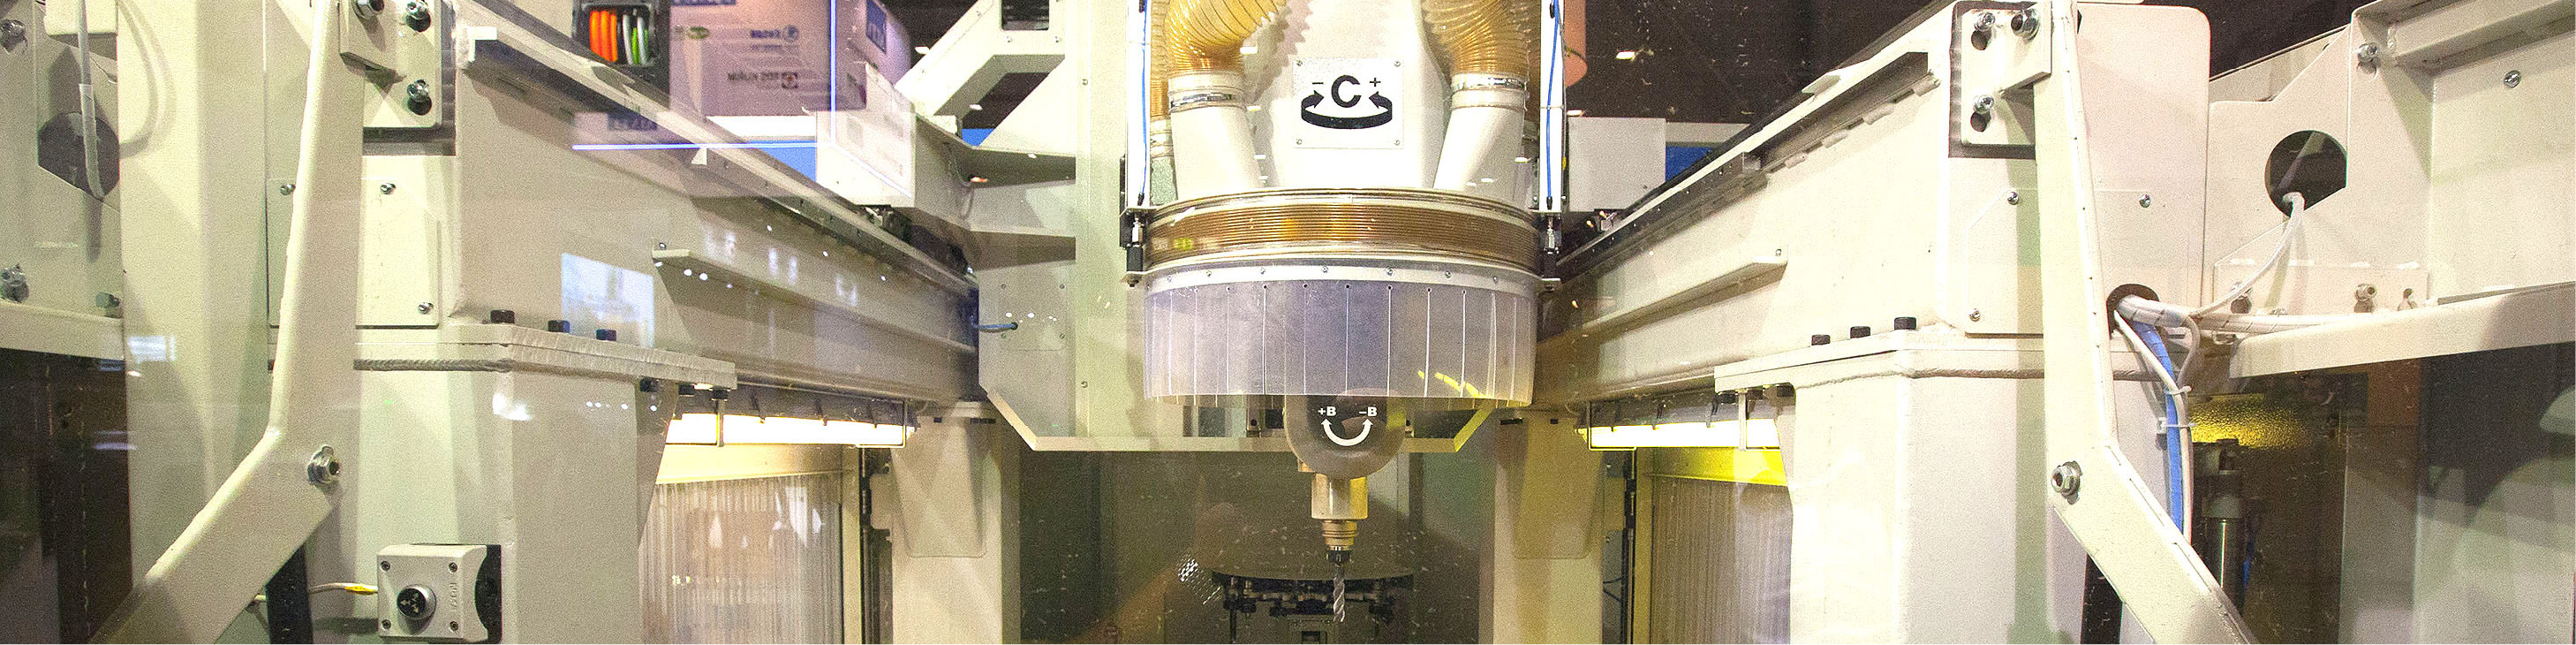 Řezání a opracování materiálu na CNC strojích